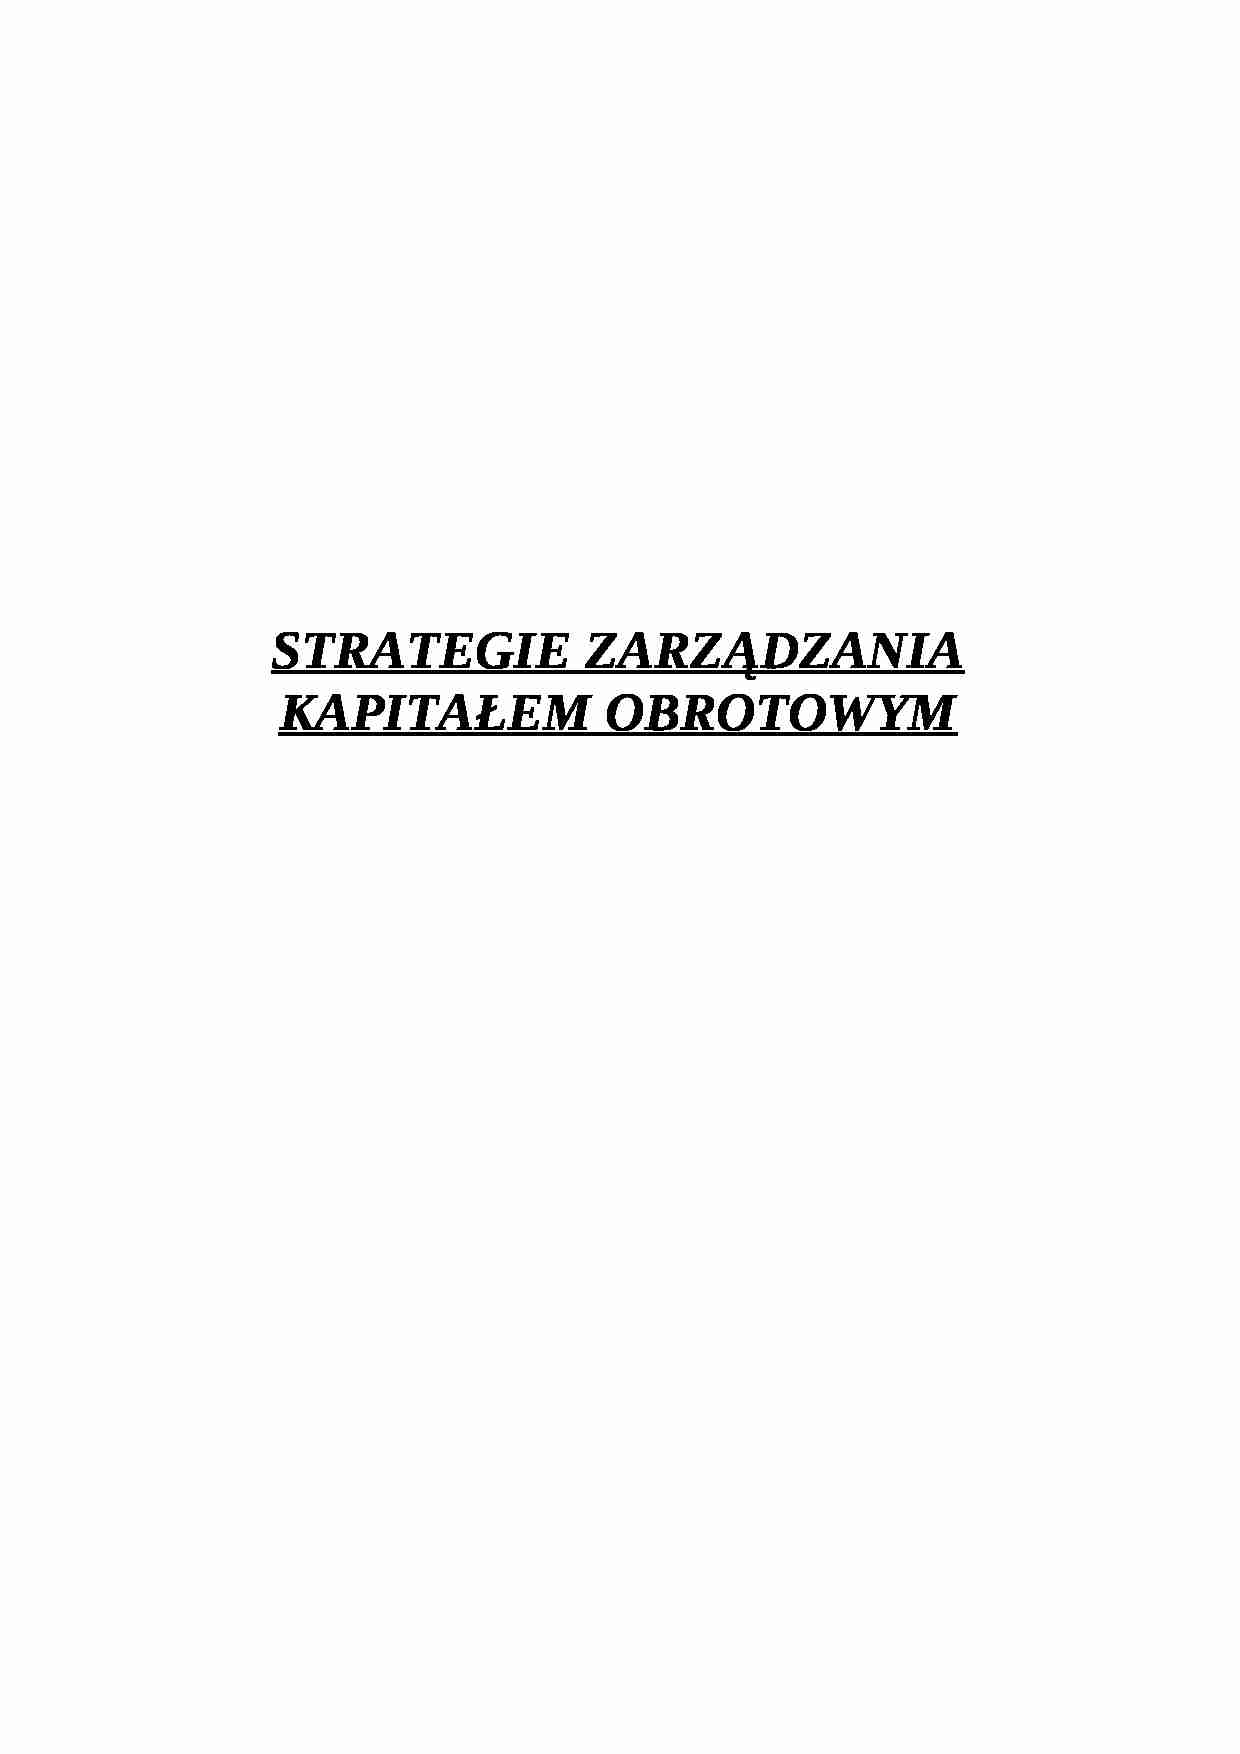 Strategie zarządzania kapitałem obrotowym - strona 1